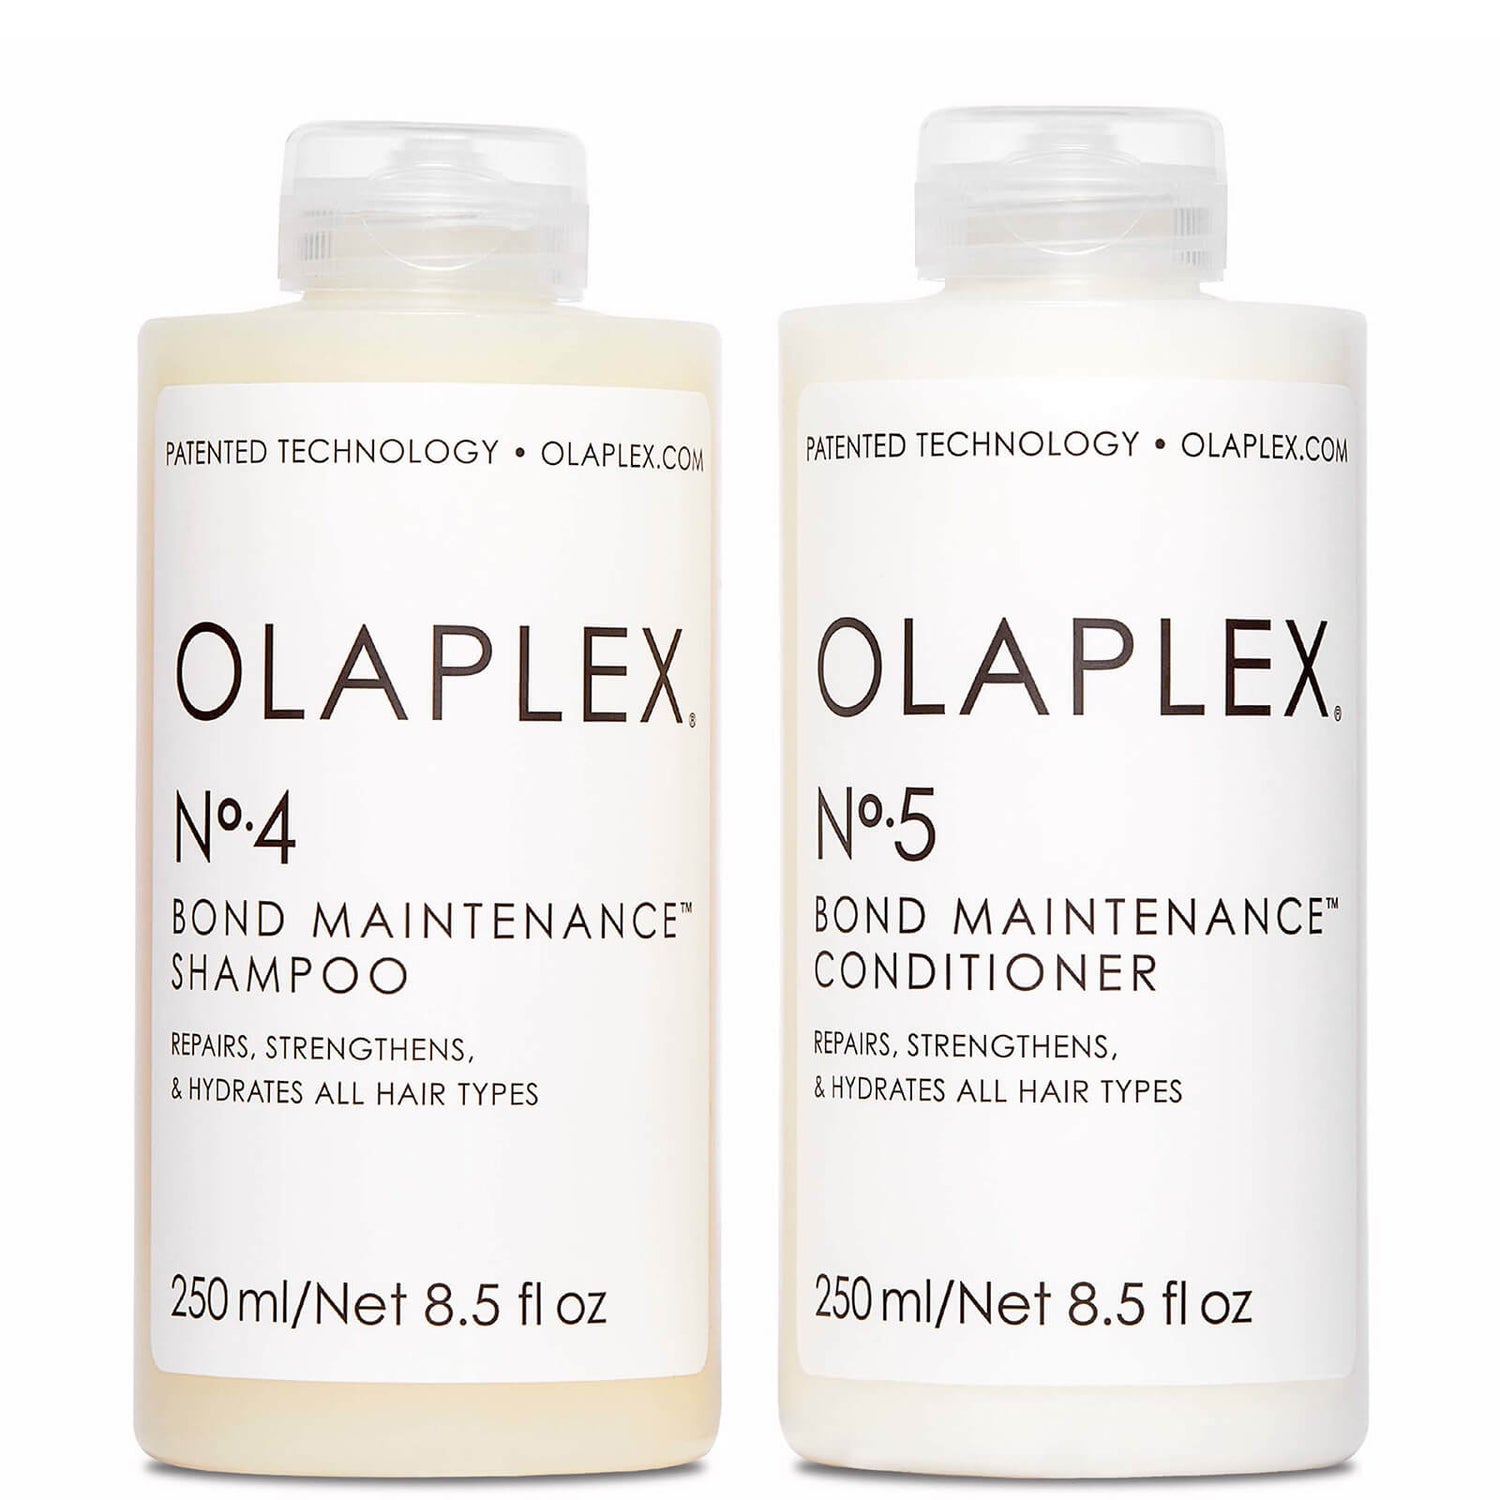 Olaplex Shampoo and Conditioner Duo